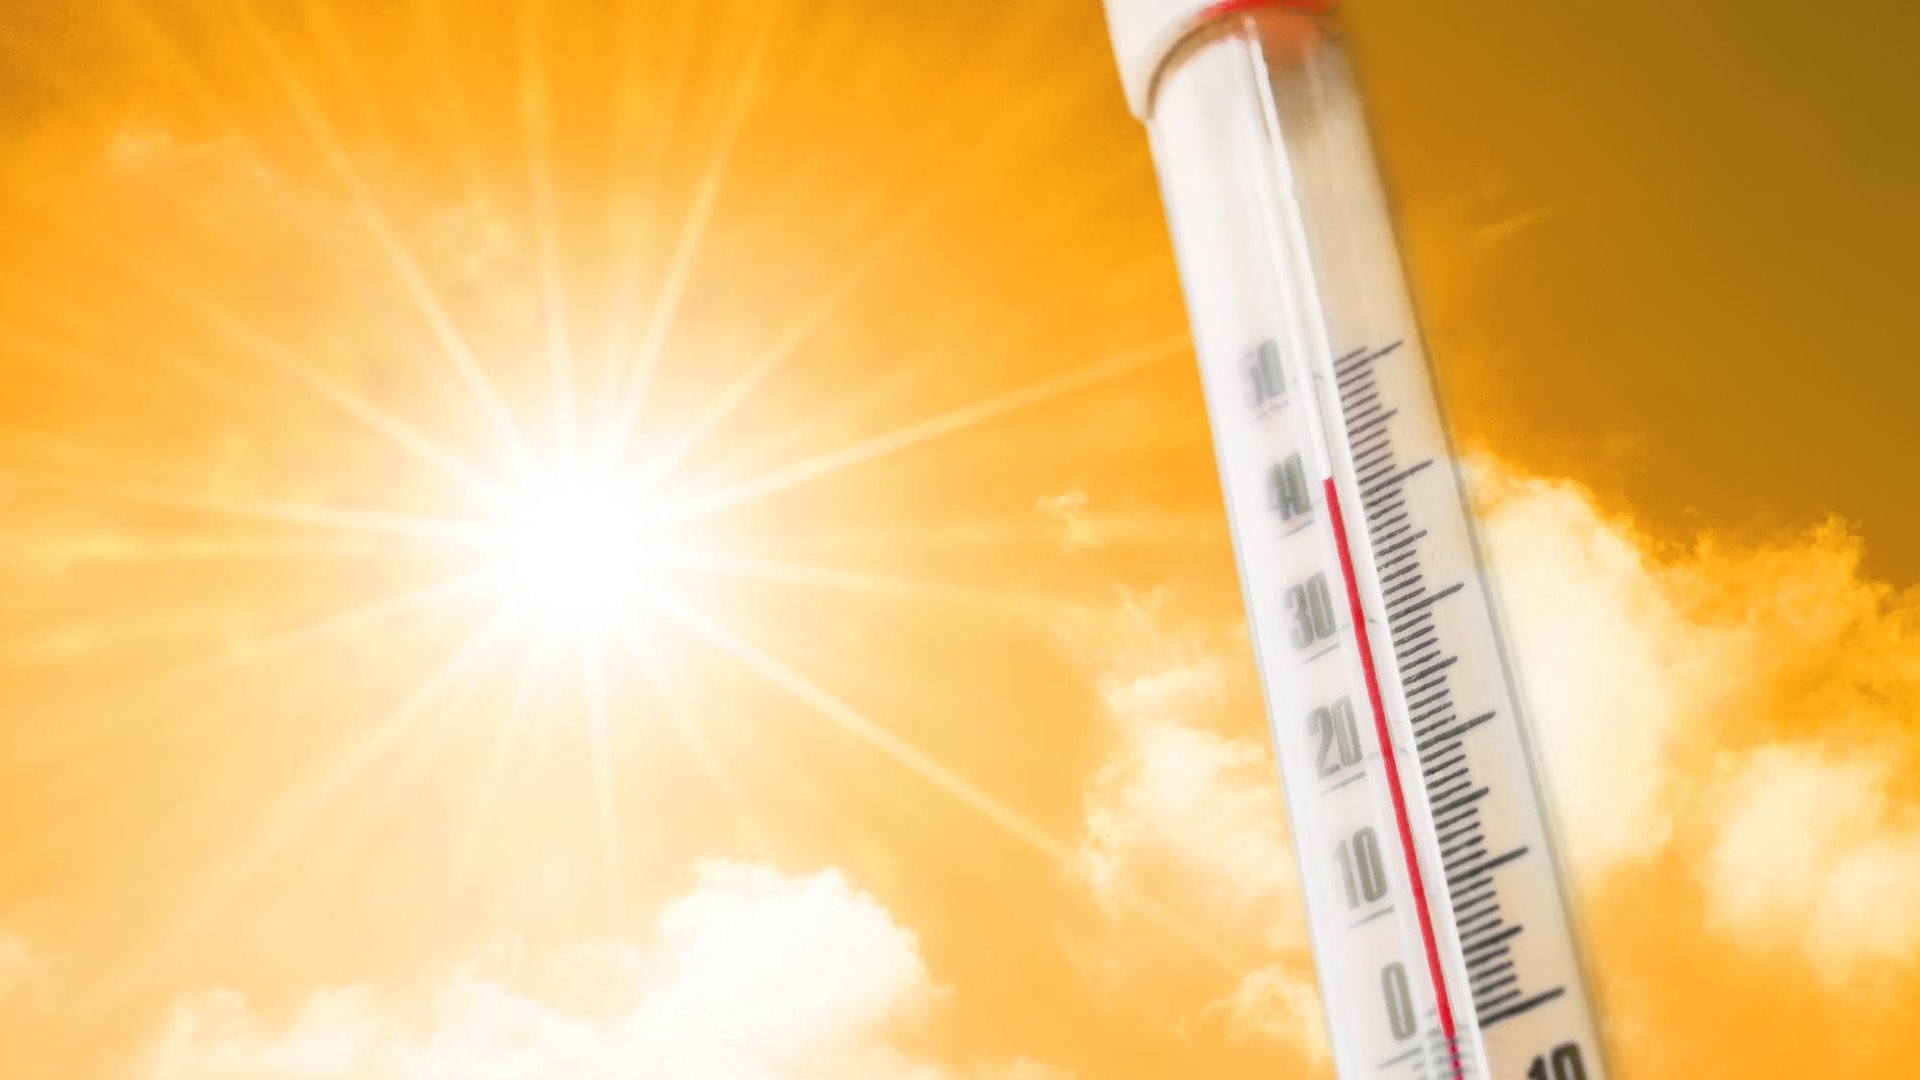 सितंबर की वैश्विक गर्मी ने रिकॉर्ड तोड़ दिए, विशेषज्ञों ने चिंता जताई